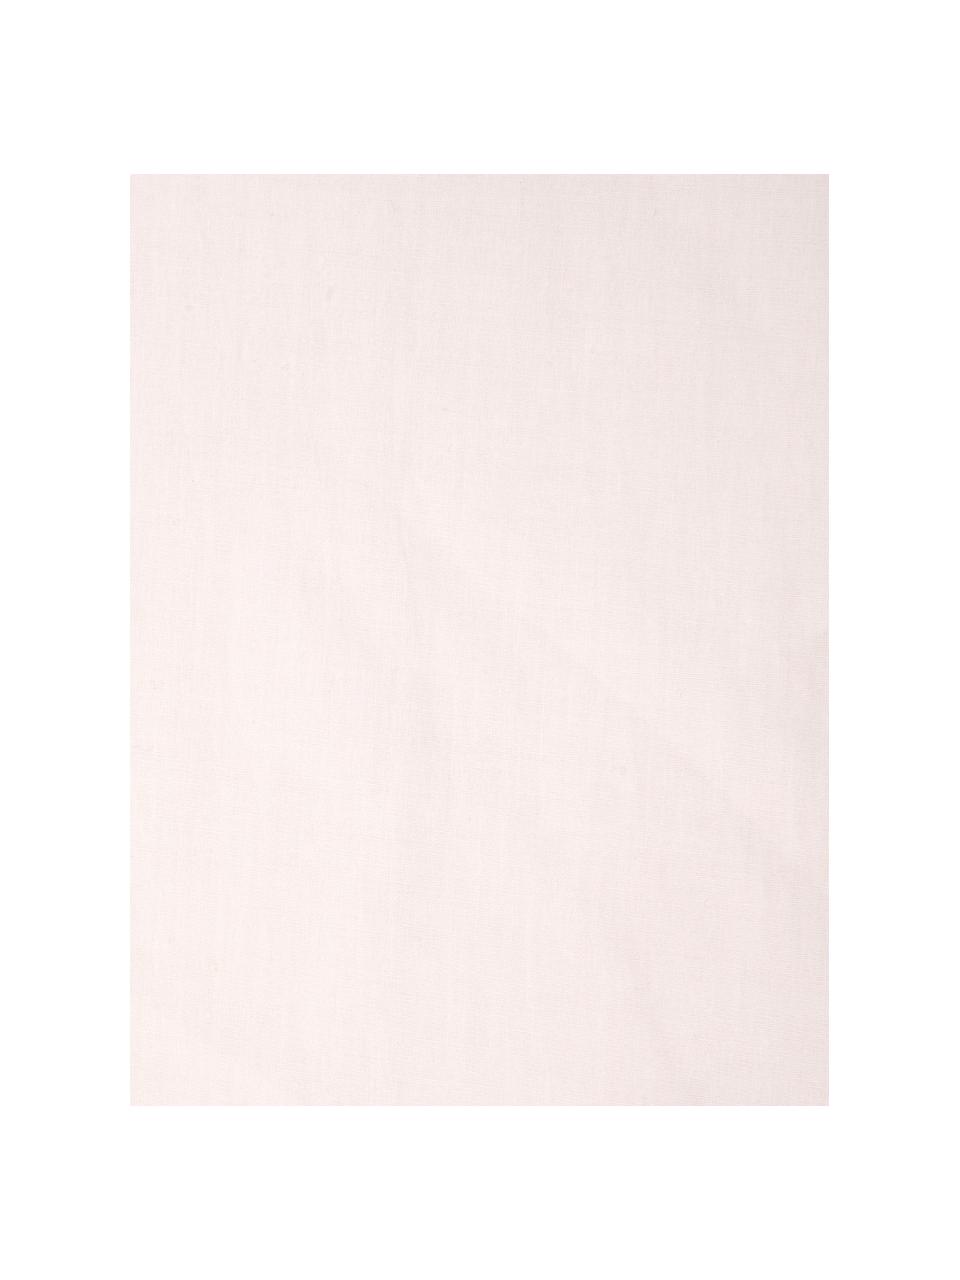 Funda de almohada de percal Malin, 45 x 85 cm, Estampado mármol rosa claro, An 45 x L 85 cm